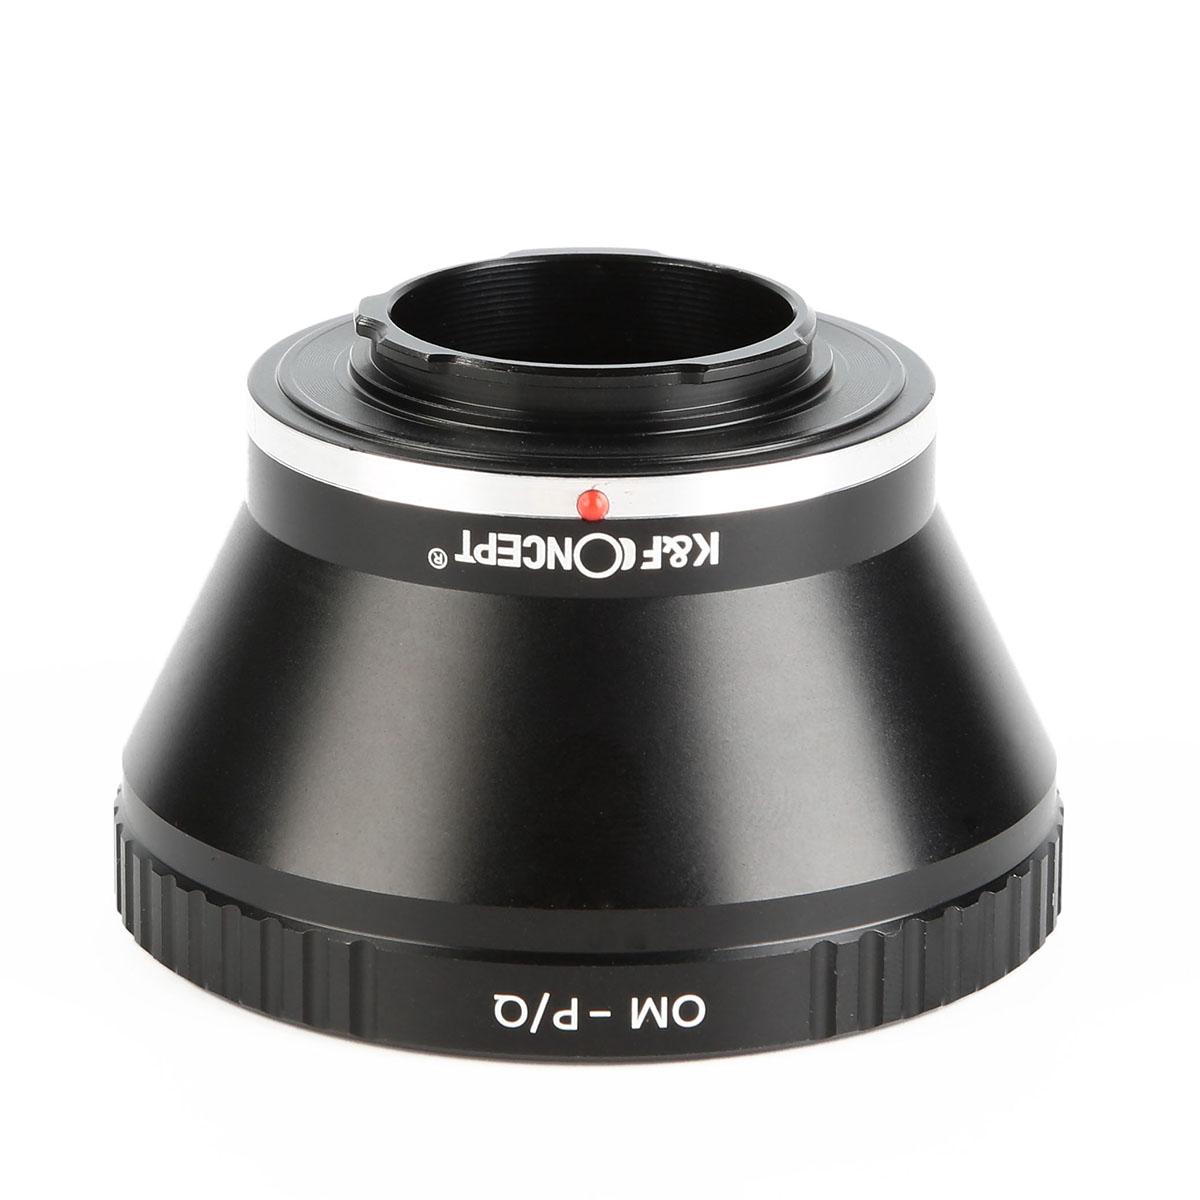 K&F Concept Adapter für Olympus OM Objektiv auf Pentax Q Mount Kamera mit Halterung